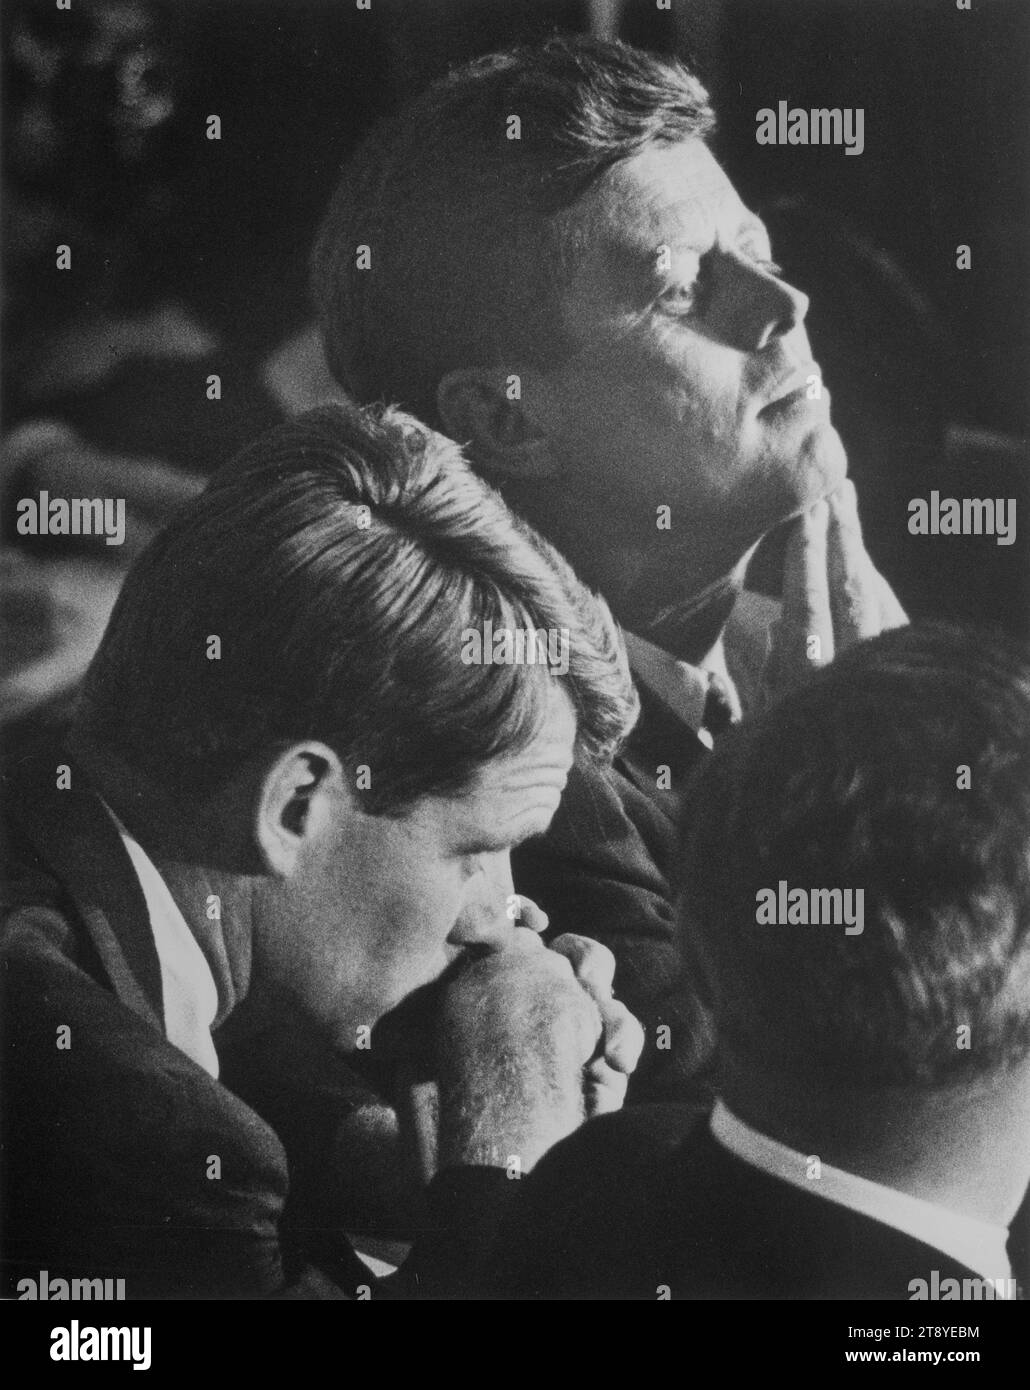 Senator John F Kennedy (rechts) und sein Bruder Robert F Kennedy betrachten die Ereignisse während der Democratic National Convention 1960, Los Angeles, Kalifornien, 13.07.1960.Foto: Warren K Leffler/US News and World Report Magazine Collection Stockfoto